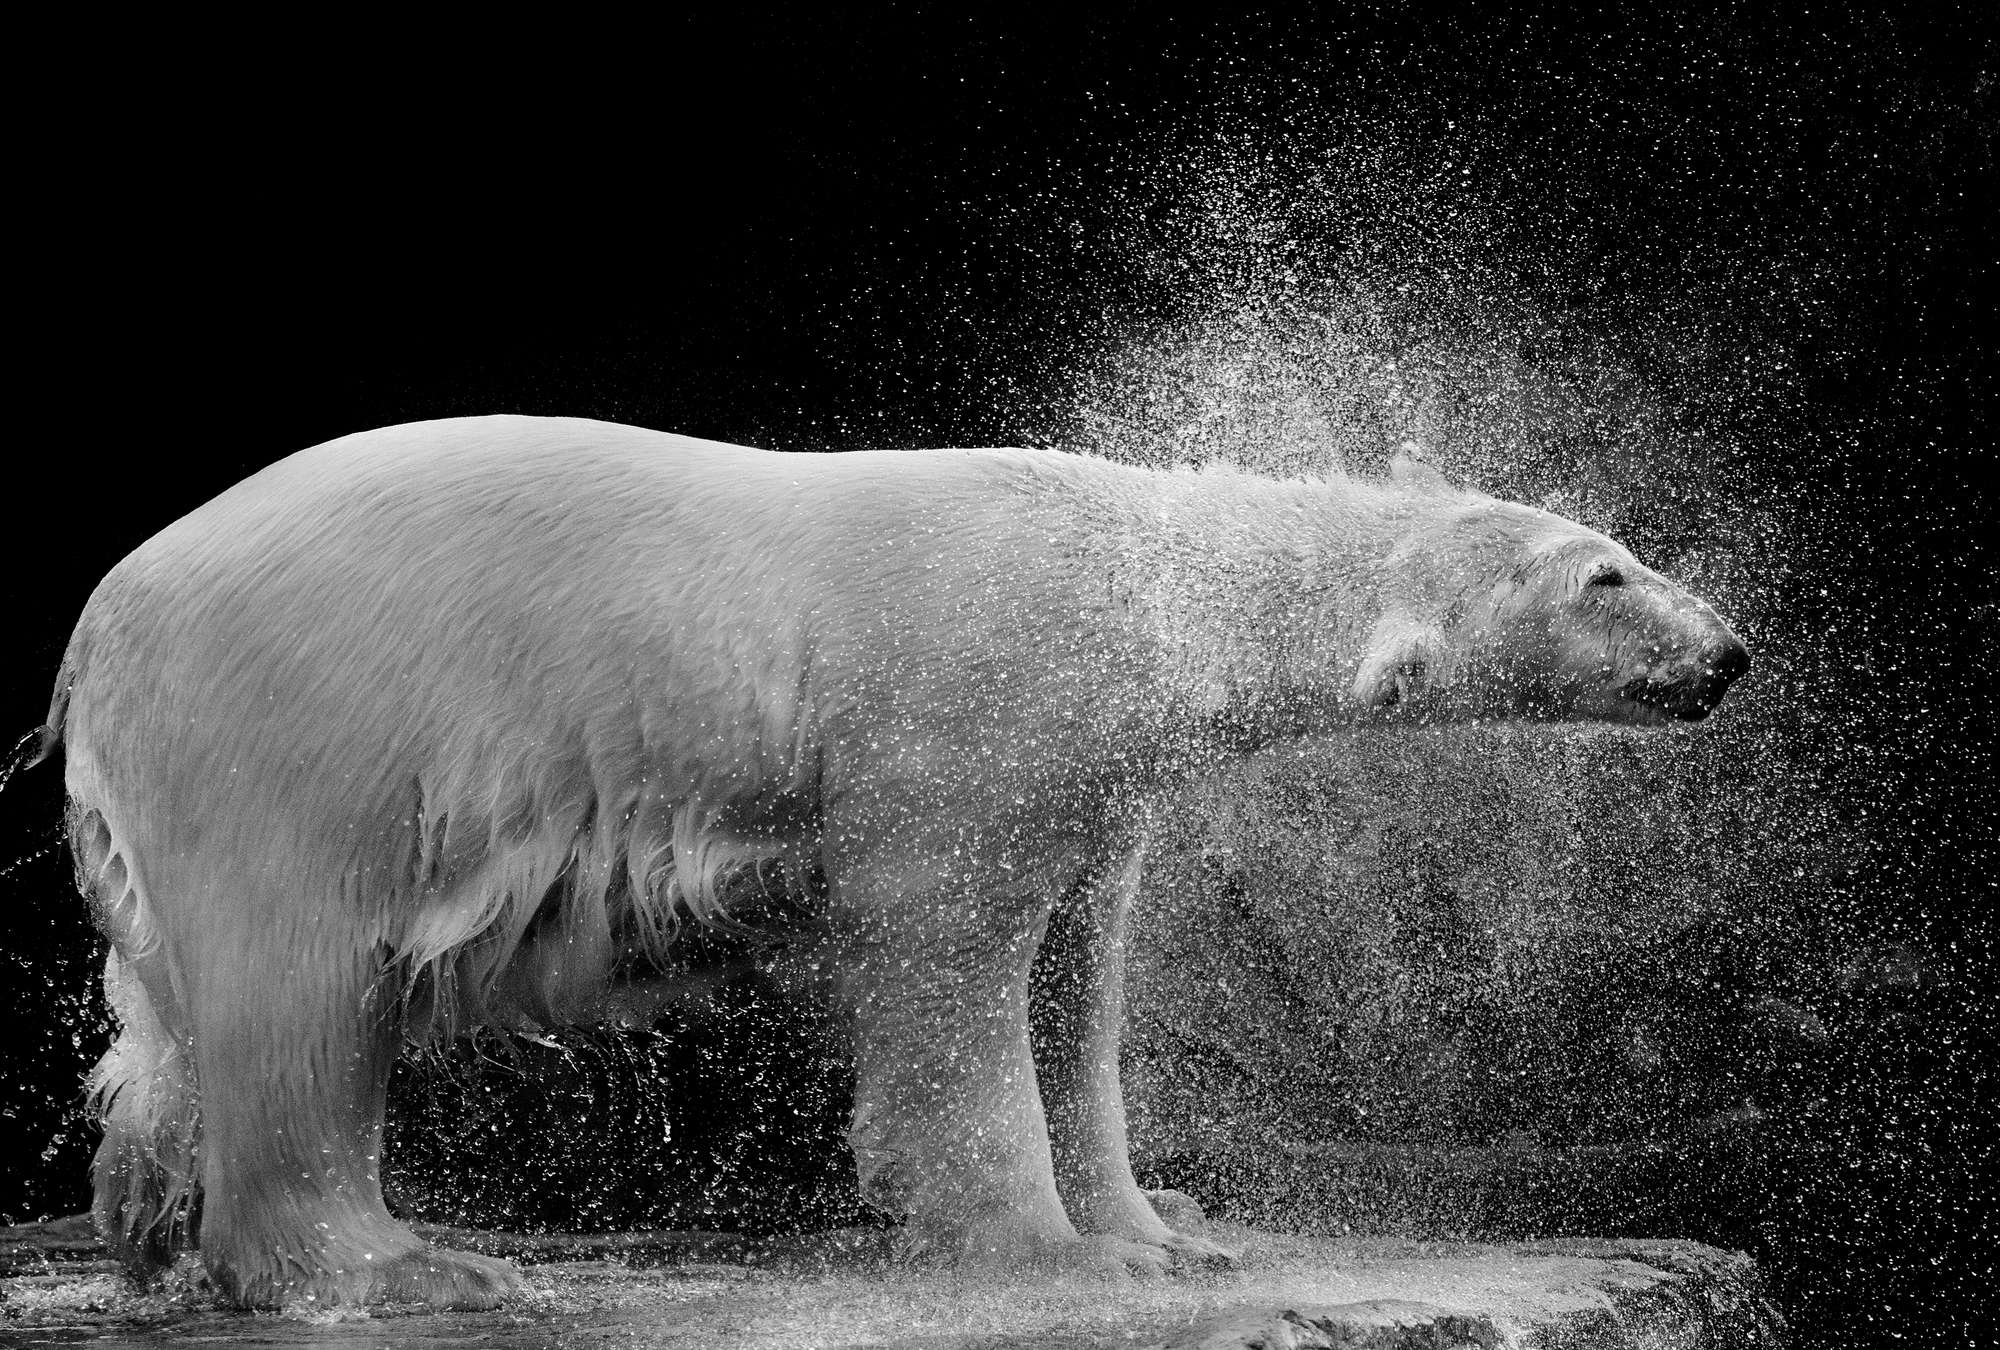             Fotomural oso polar mojado sobre fondo negro
        